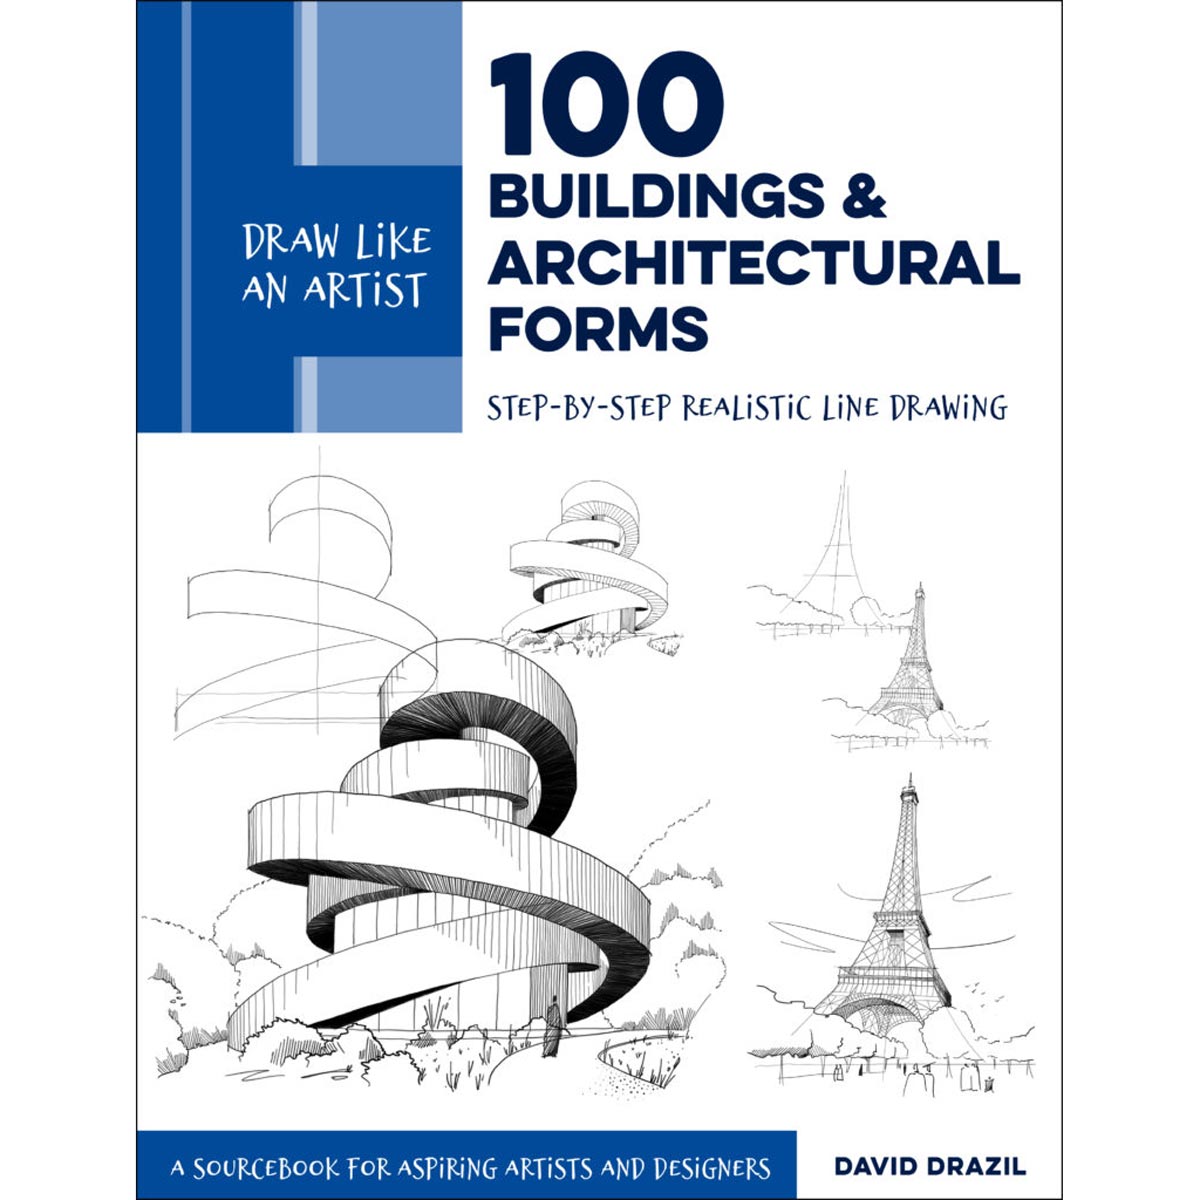 Walter Foster Books - Dessinez comme un artiste : 100 bâtiments et formes architecturales